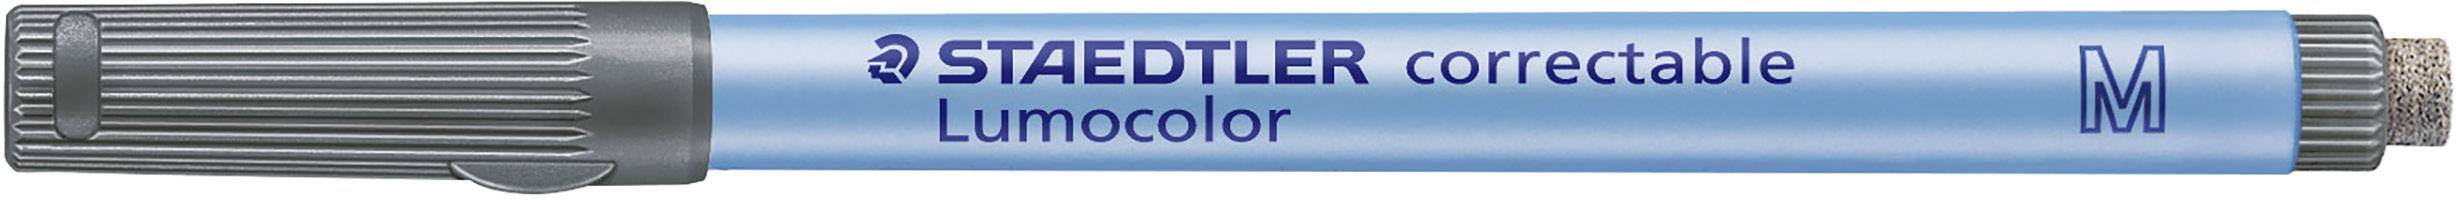 STAEDTLER Folienstift Lumocolor correctable 305 Schwarz 305 M-9